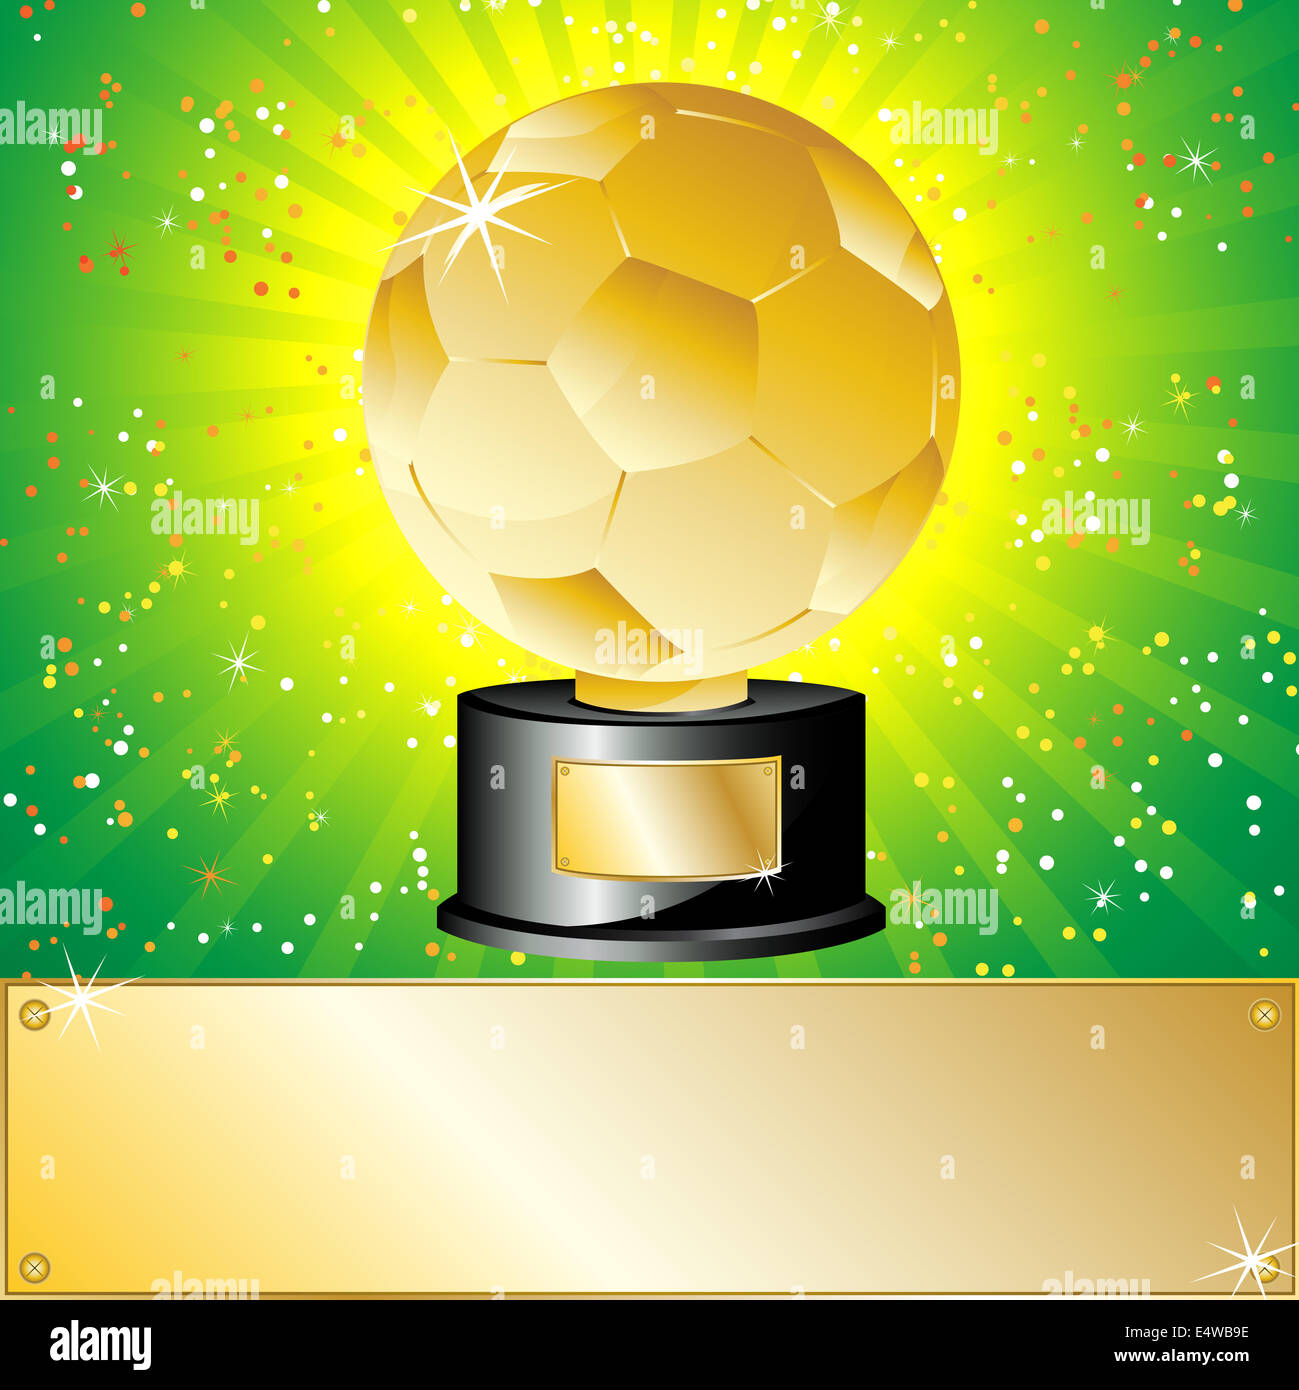 Trofeo del fútbol foto de archivo editorial. Imagen de campeones - 35994118